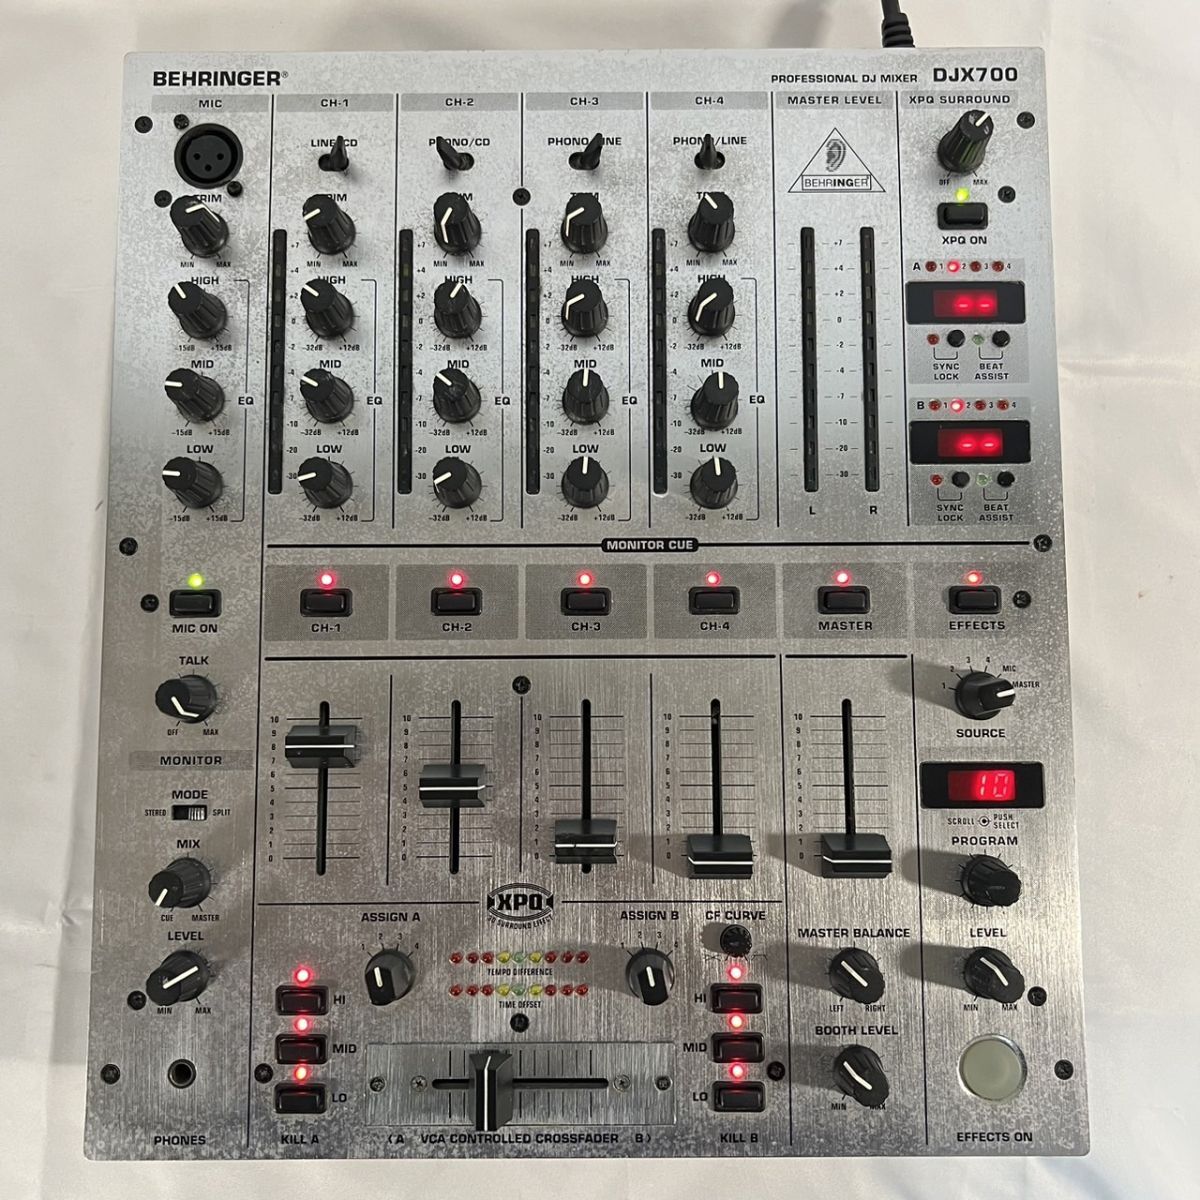 BEHRINGER DJ PRO MIXER DJX700 Behringer mixer Professional DJ mixer operation goods sound equipment 